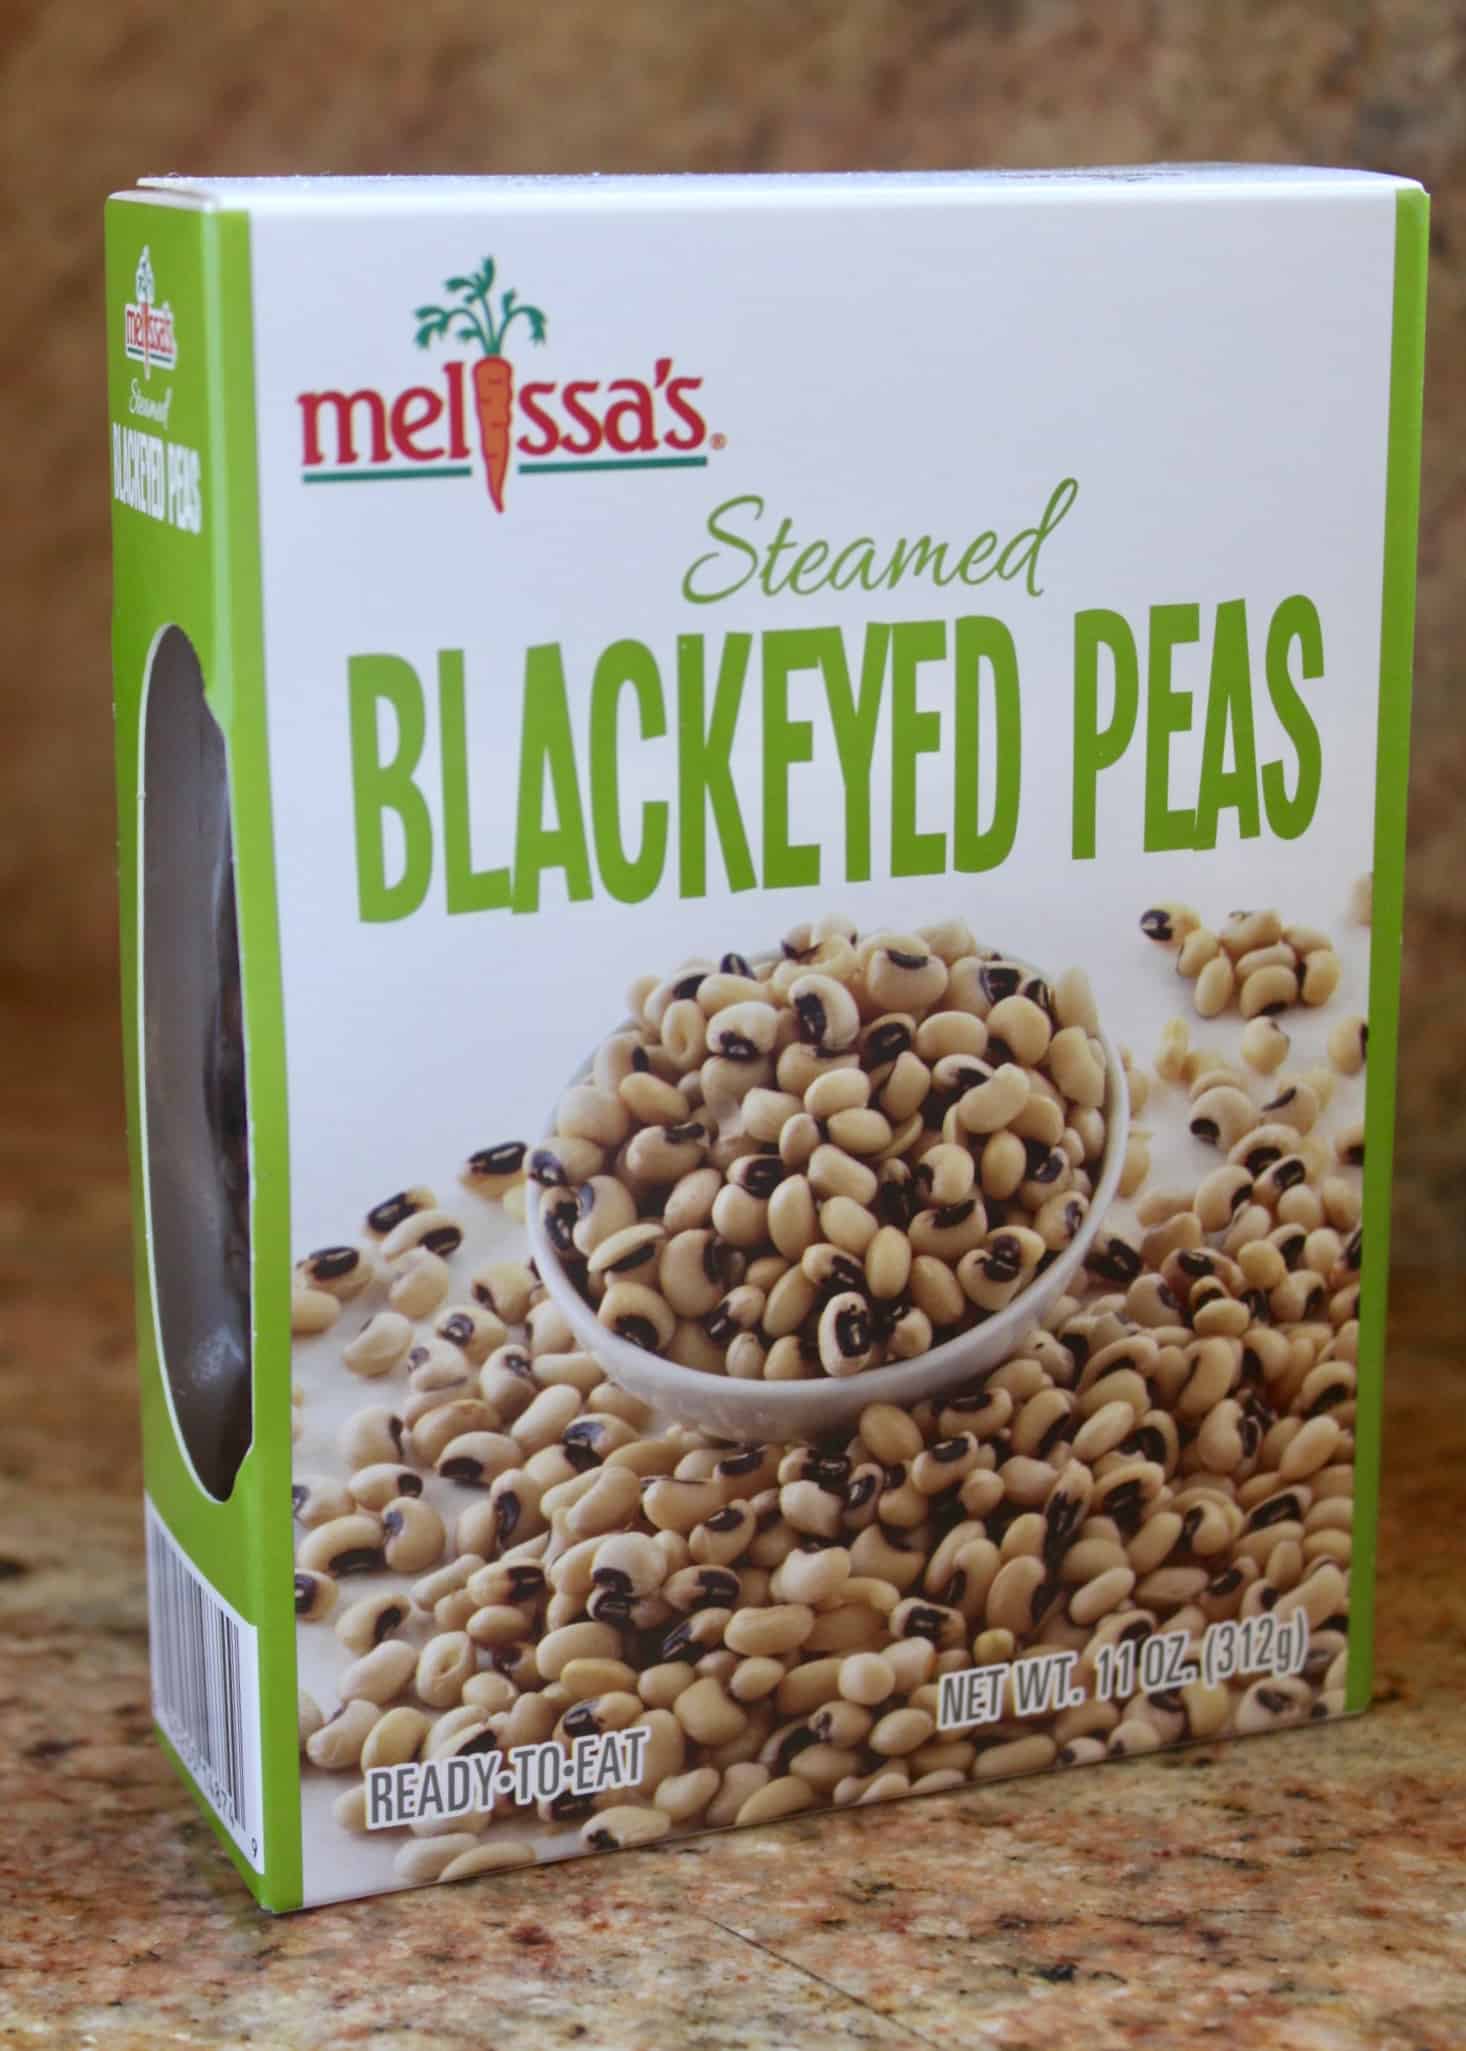 Melissas box of black eyed peas